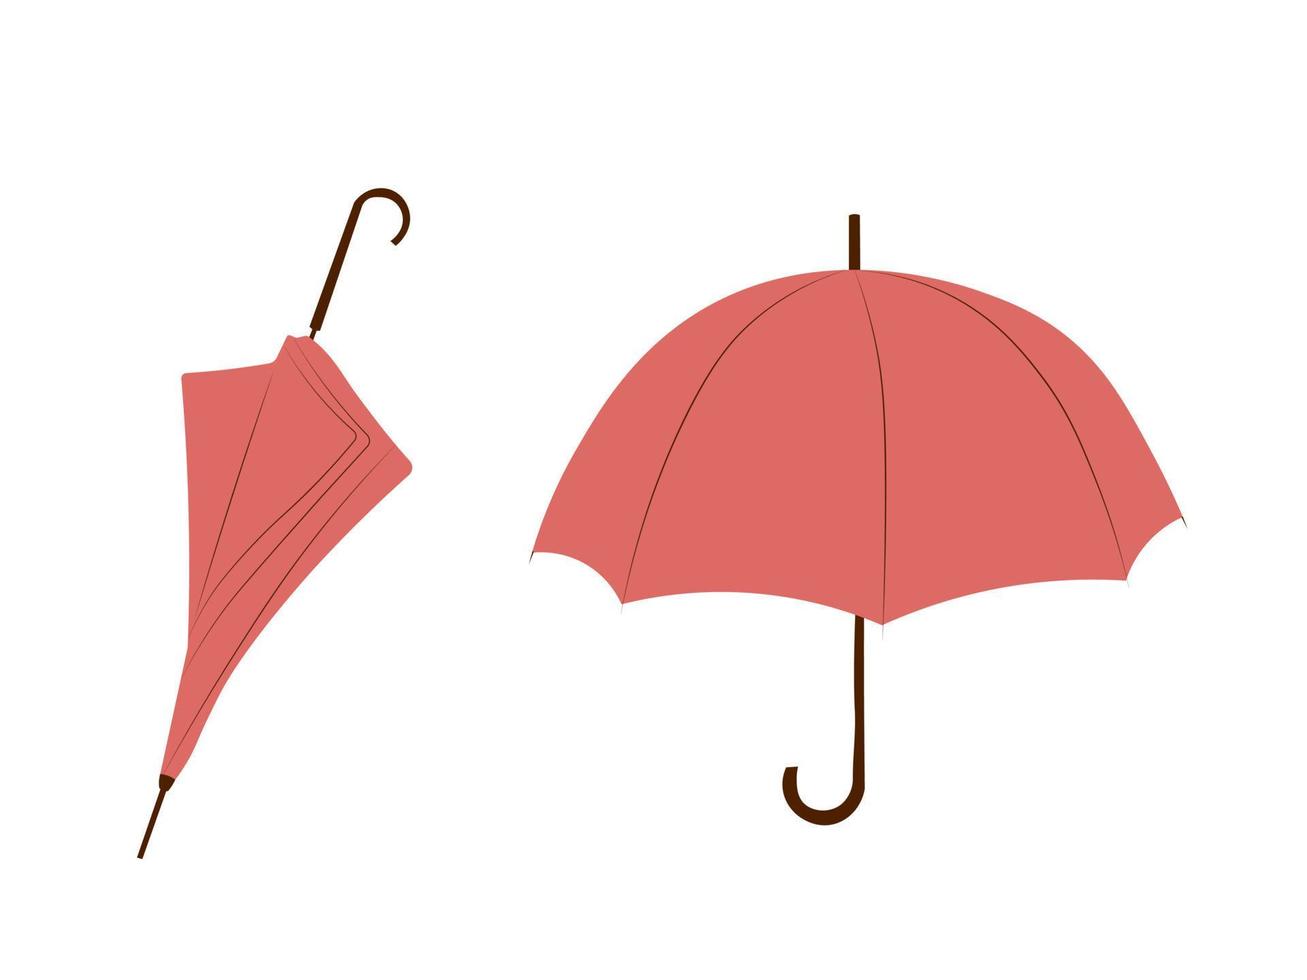 Stellen Sie Vektorillustration von offenen und gefalteten Regenschirmen im flachen Stil ein. Regenschirm in herbstlichen Boho-Farben vektor